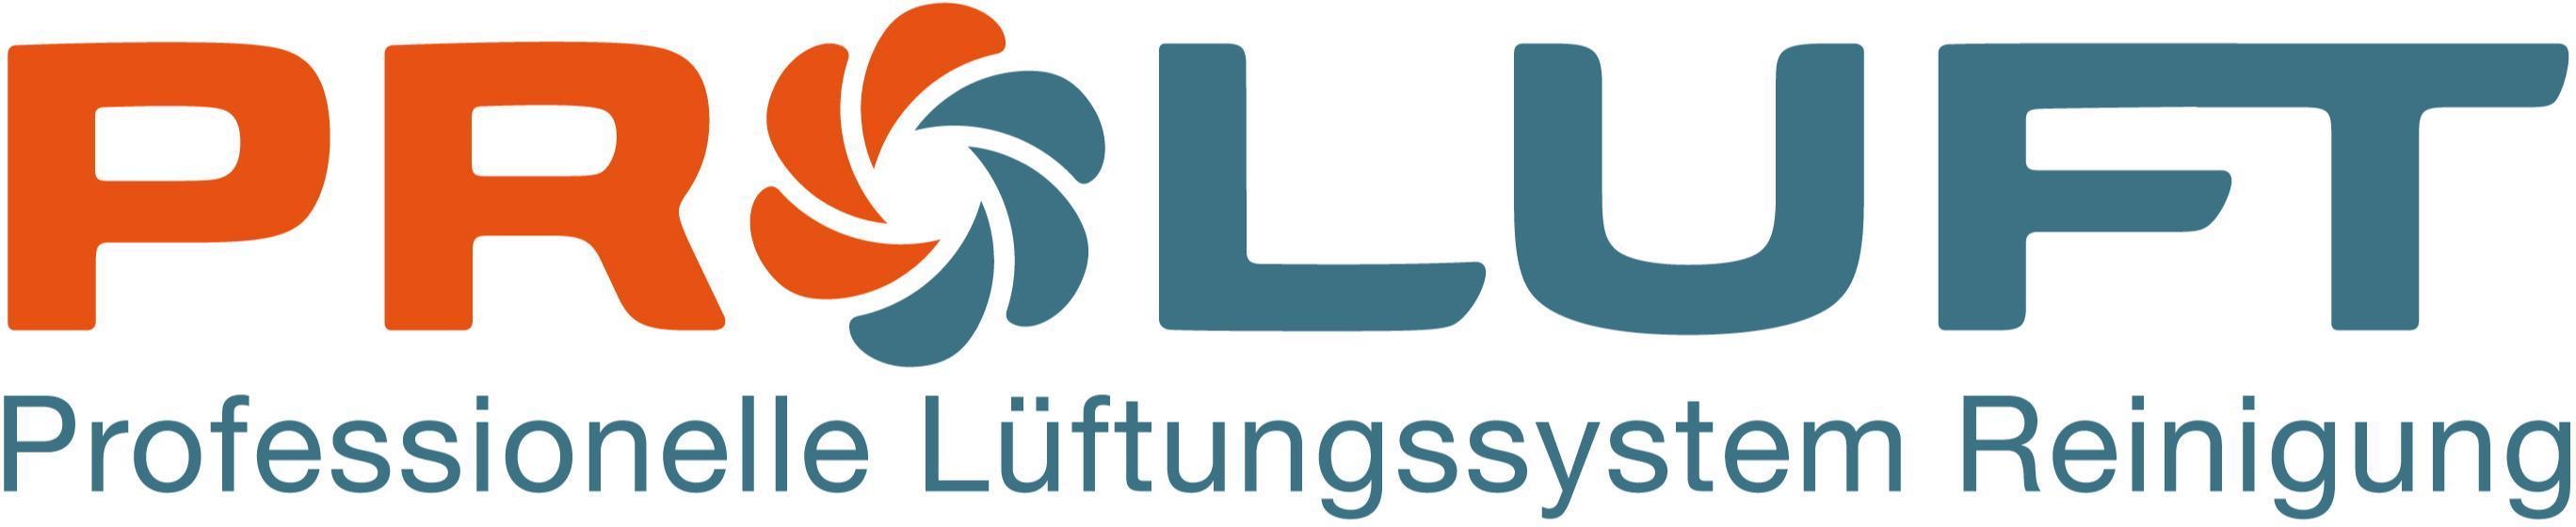 Logo PROLUFT Professionelle Lüftungssystem Reinigungs GmbH